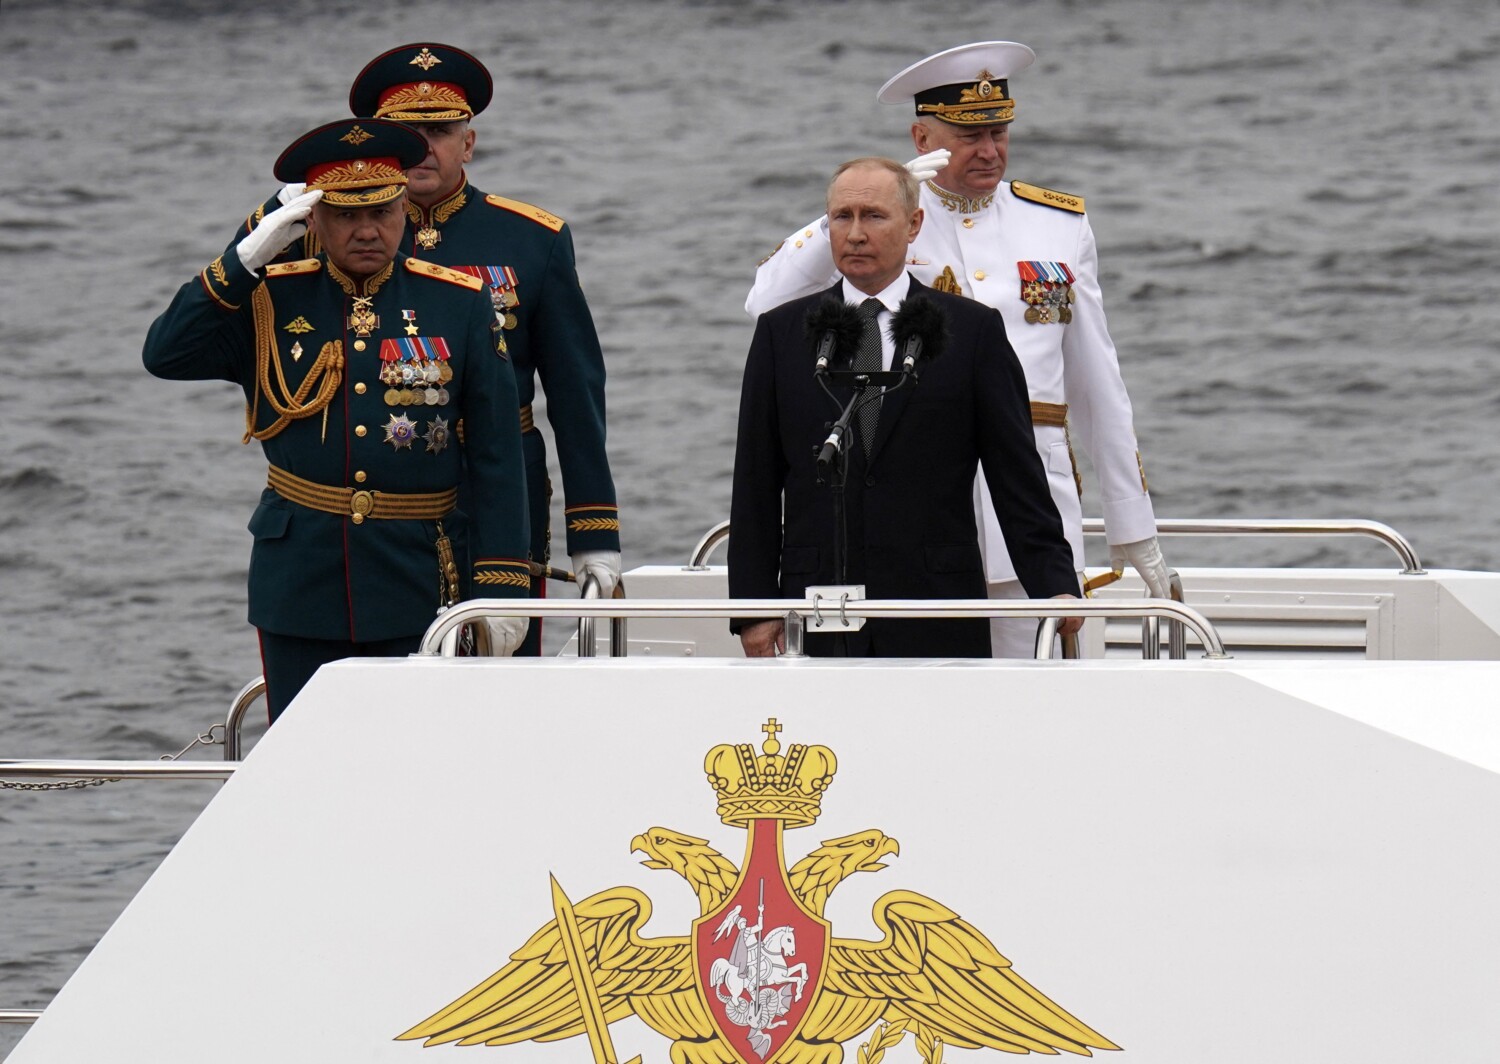 Nova doutrina naval de Putin lista EUA e OTAN como principais ameaças à segurança nacional da Rússia